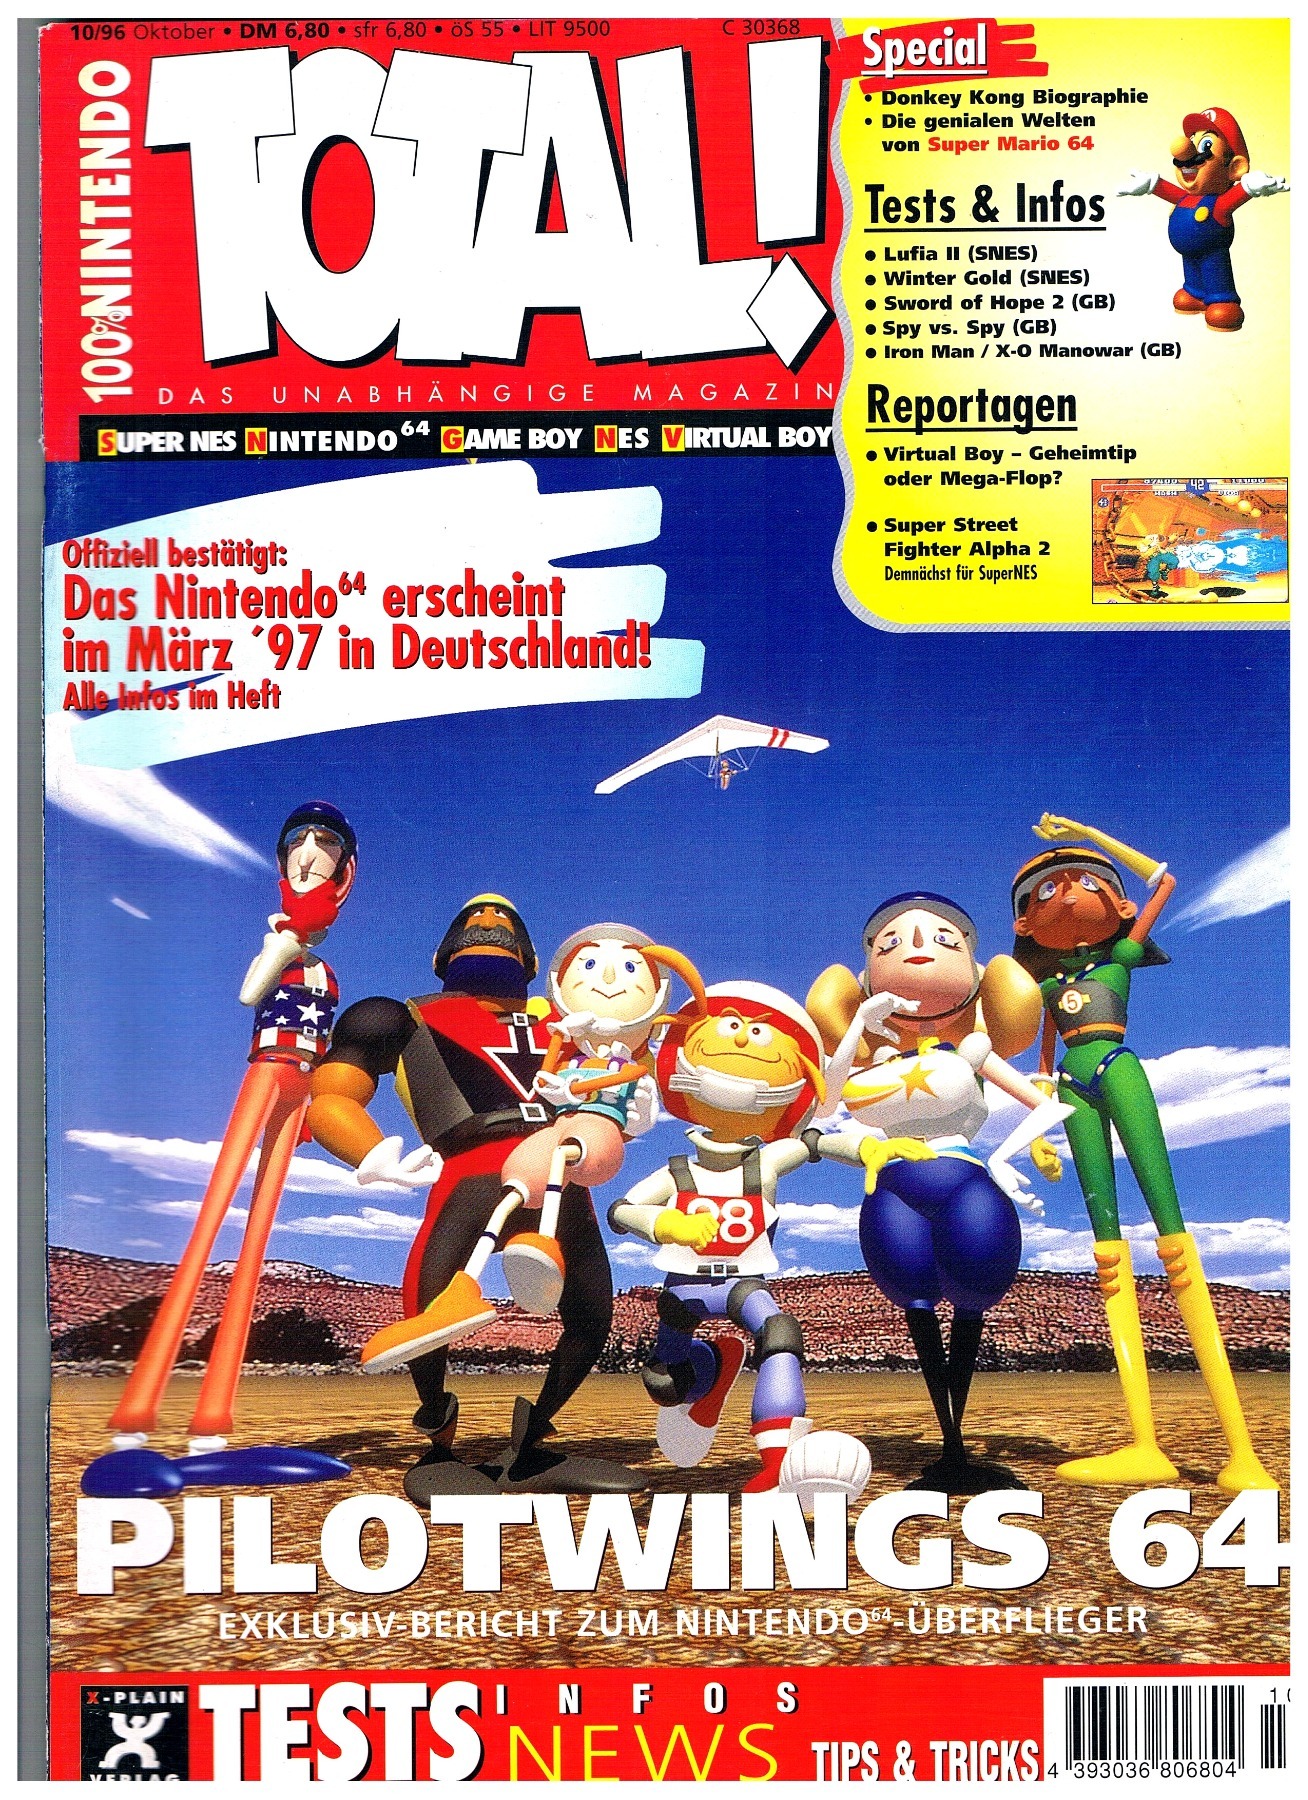 TOTAL Das unabhängige Magazin - 100% Nintendo - Ausgabe 10/96 1996